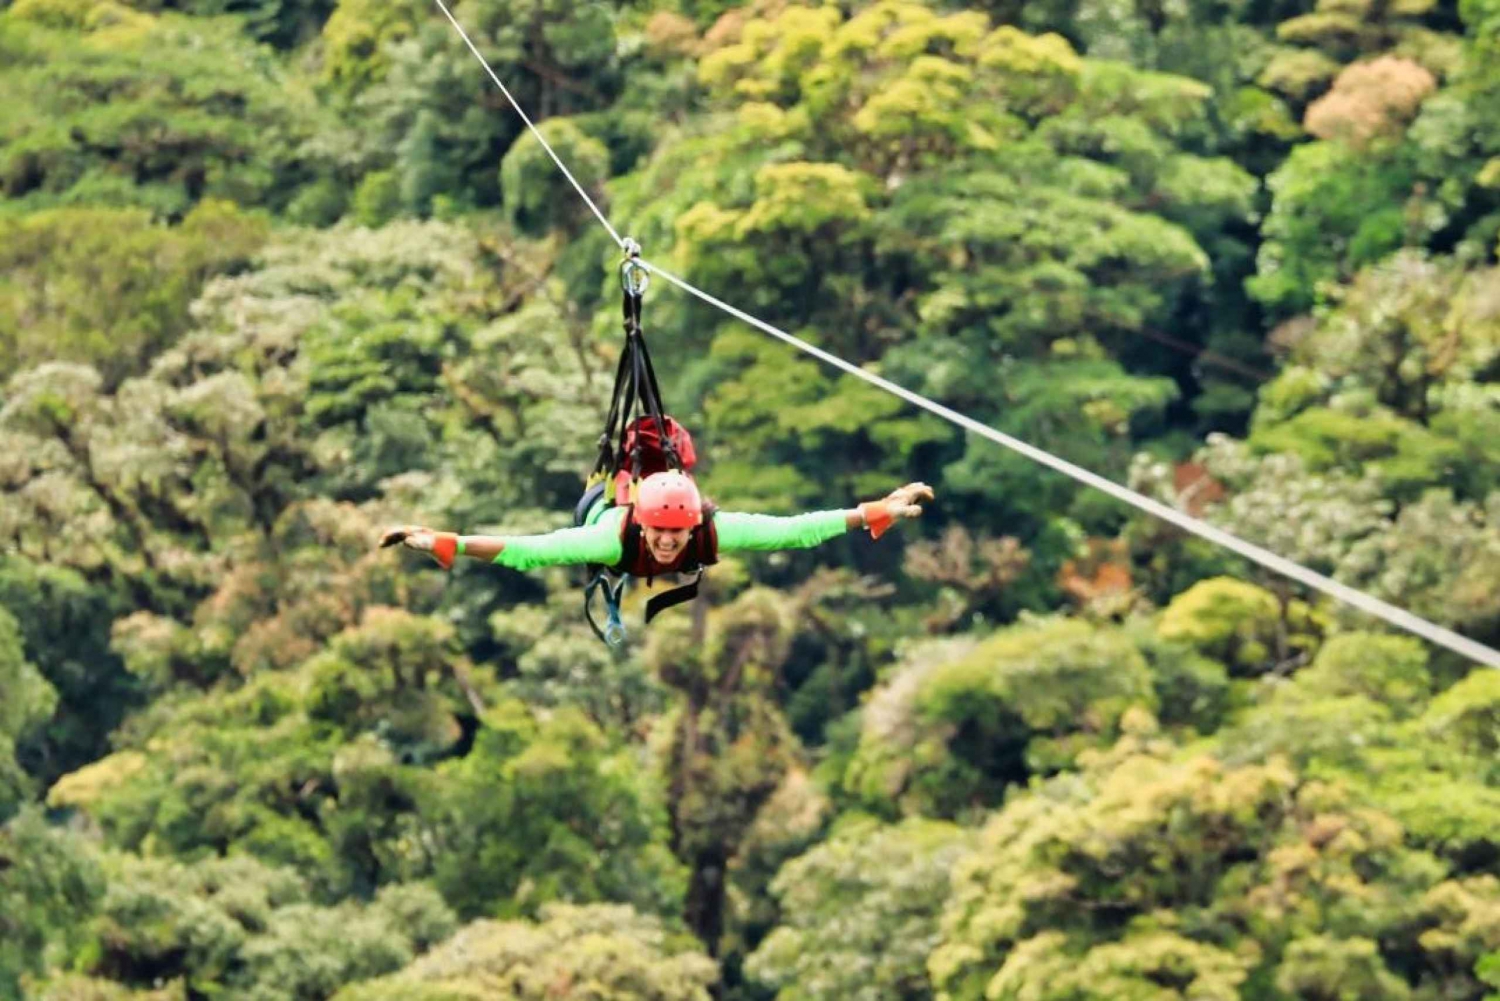 Monteverde: passeio de tirolesa, pontes e jardim de borboletas